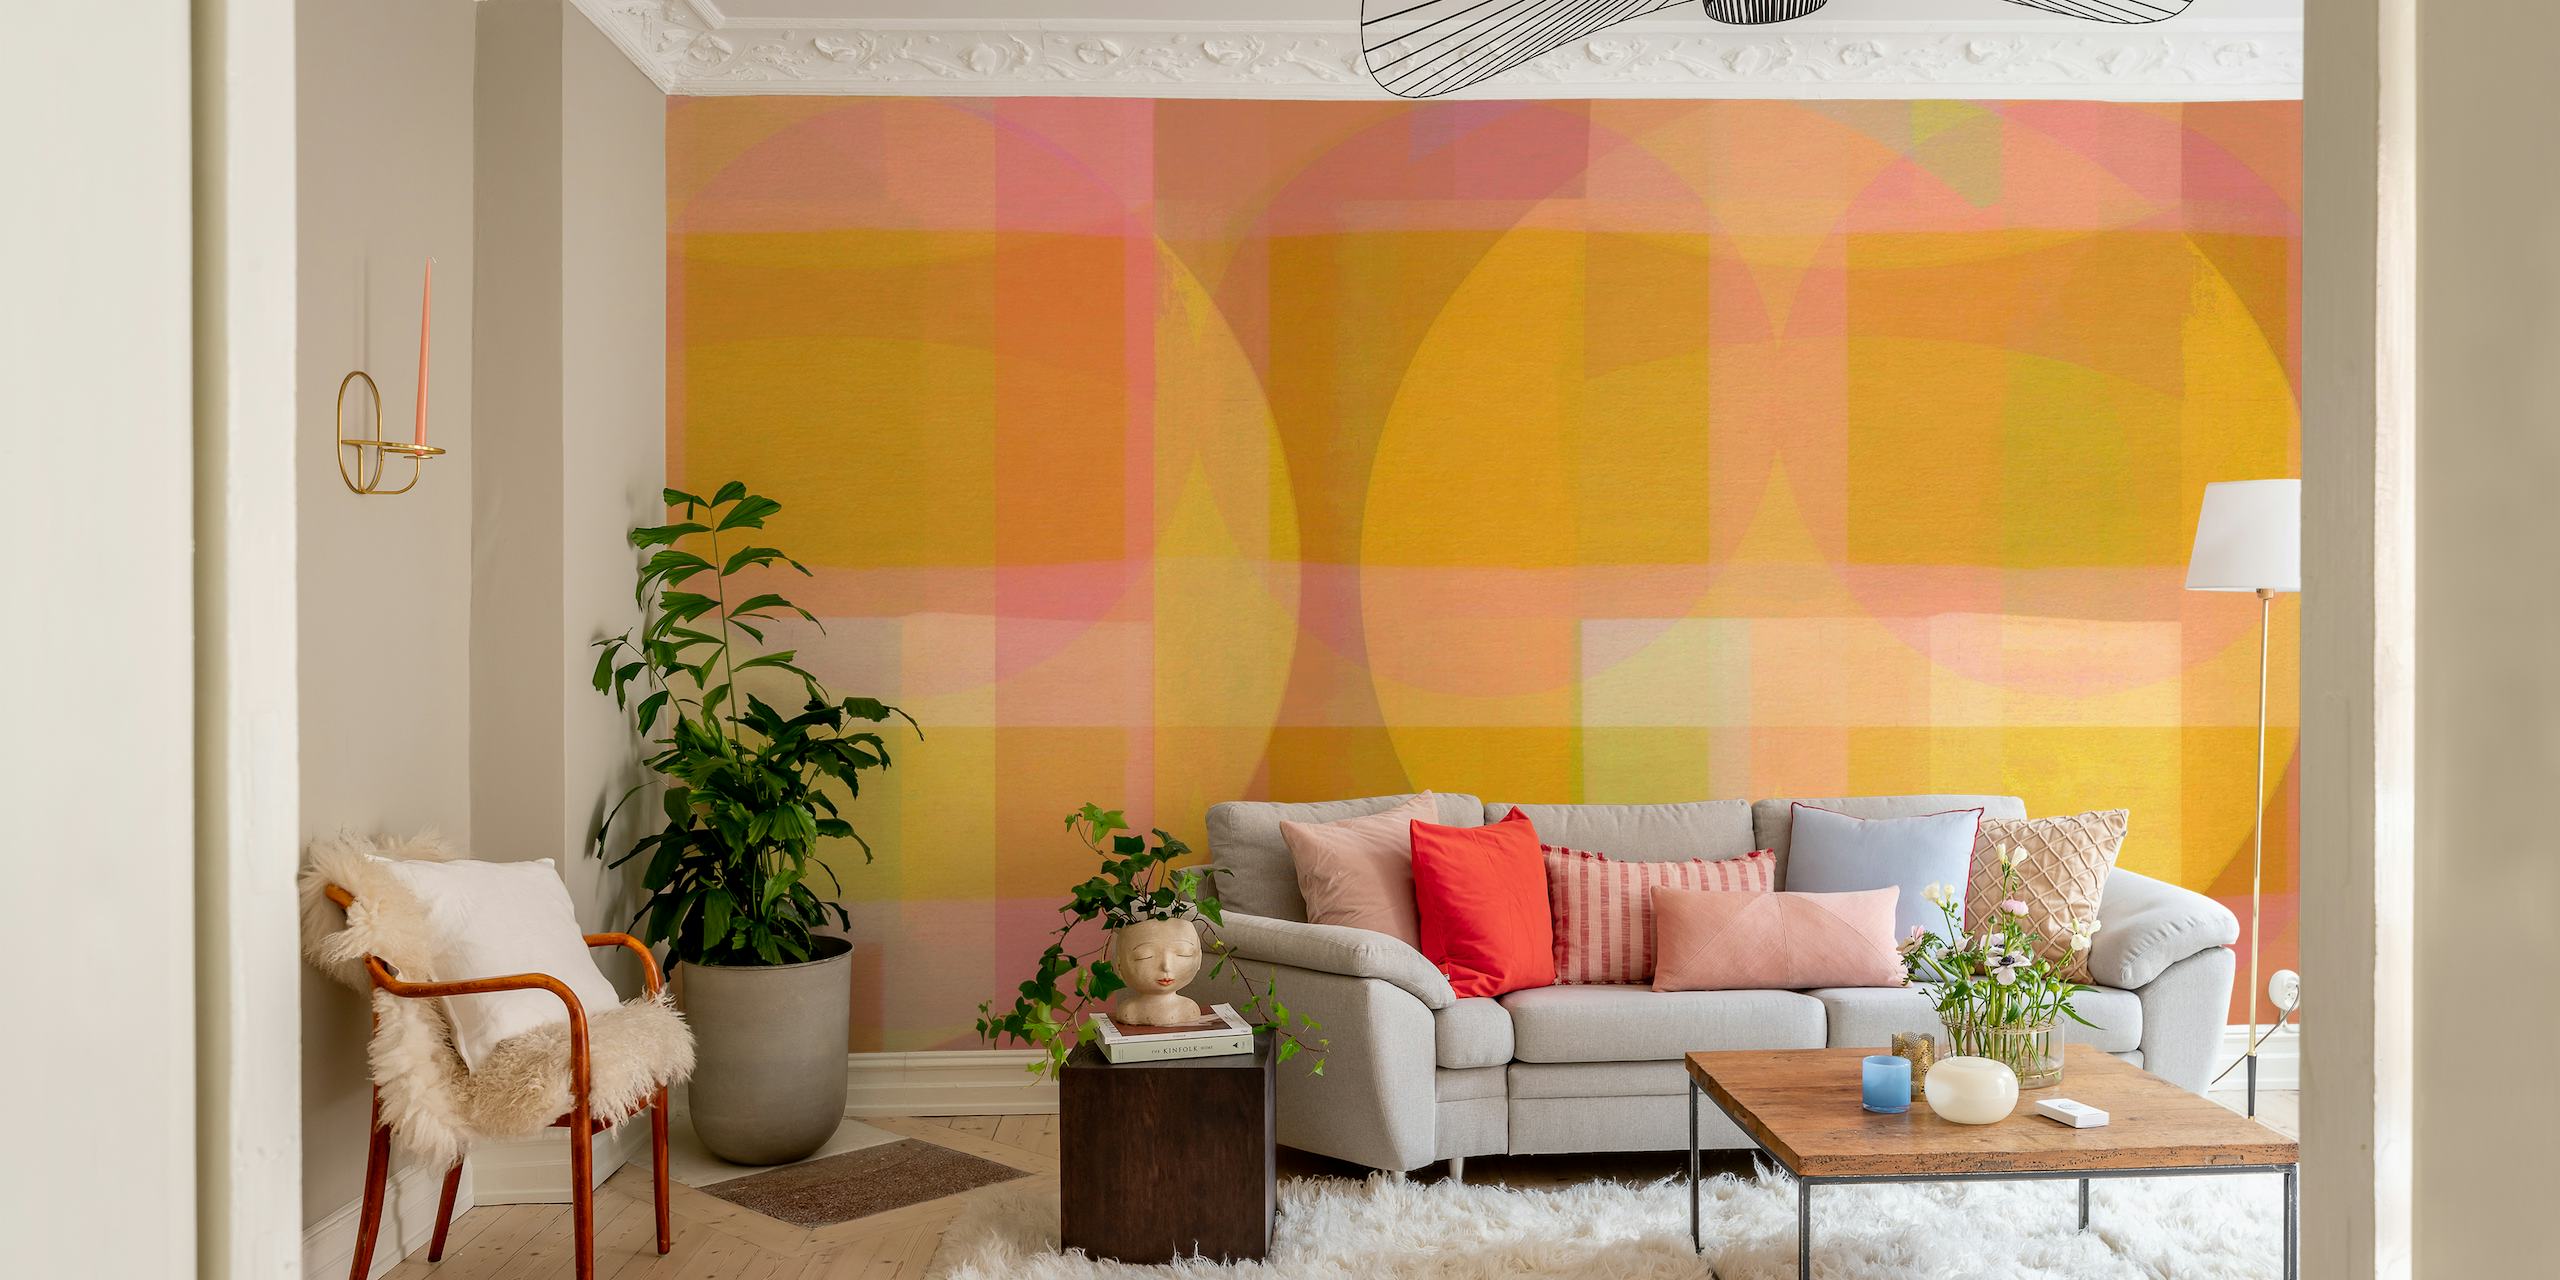 Apstraktna pastelna zidna slika u stilu Bauhausa s geometrijskim oblicima